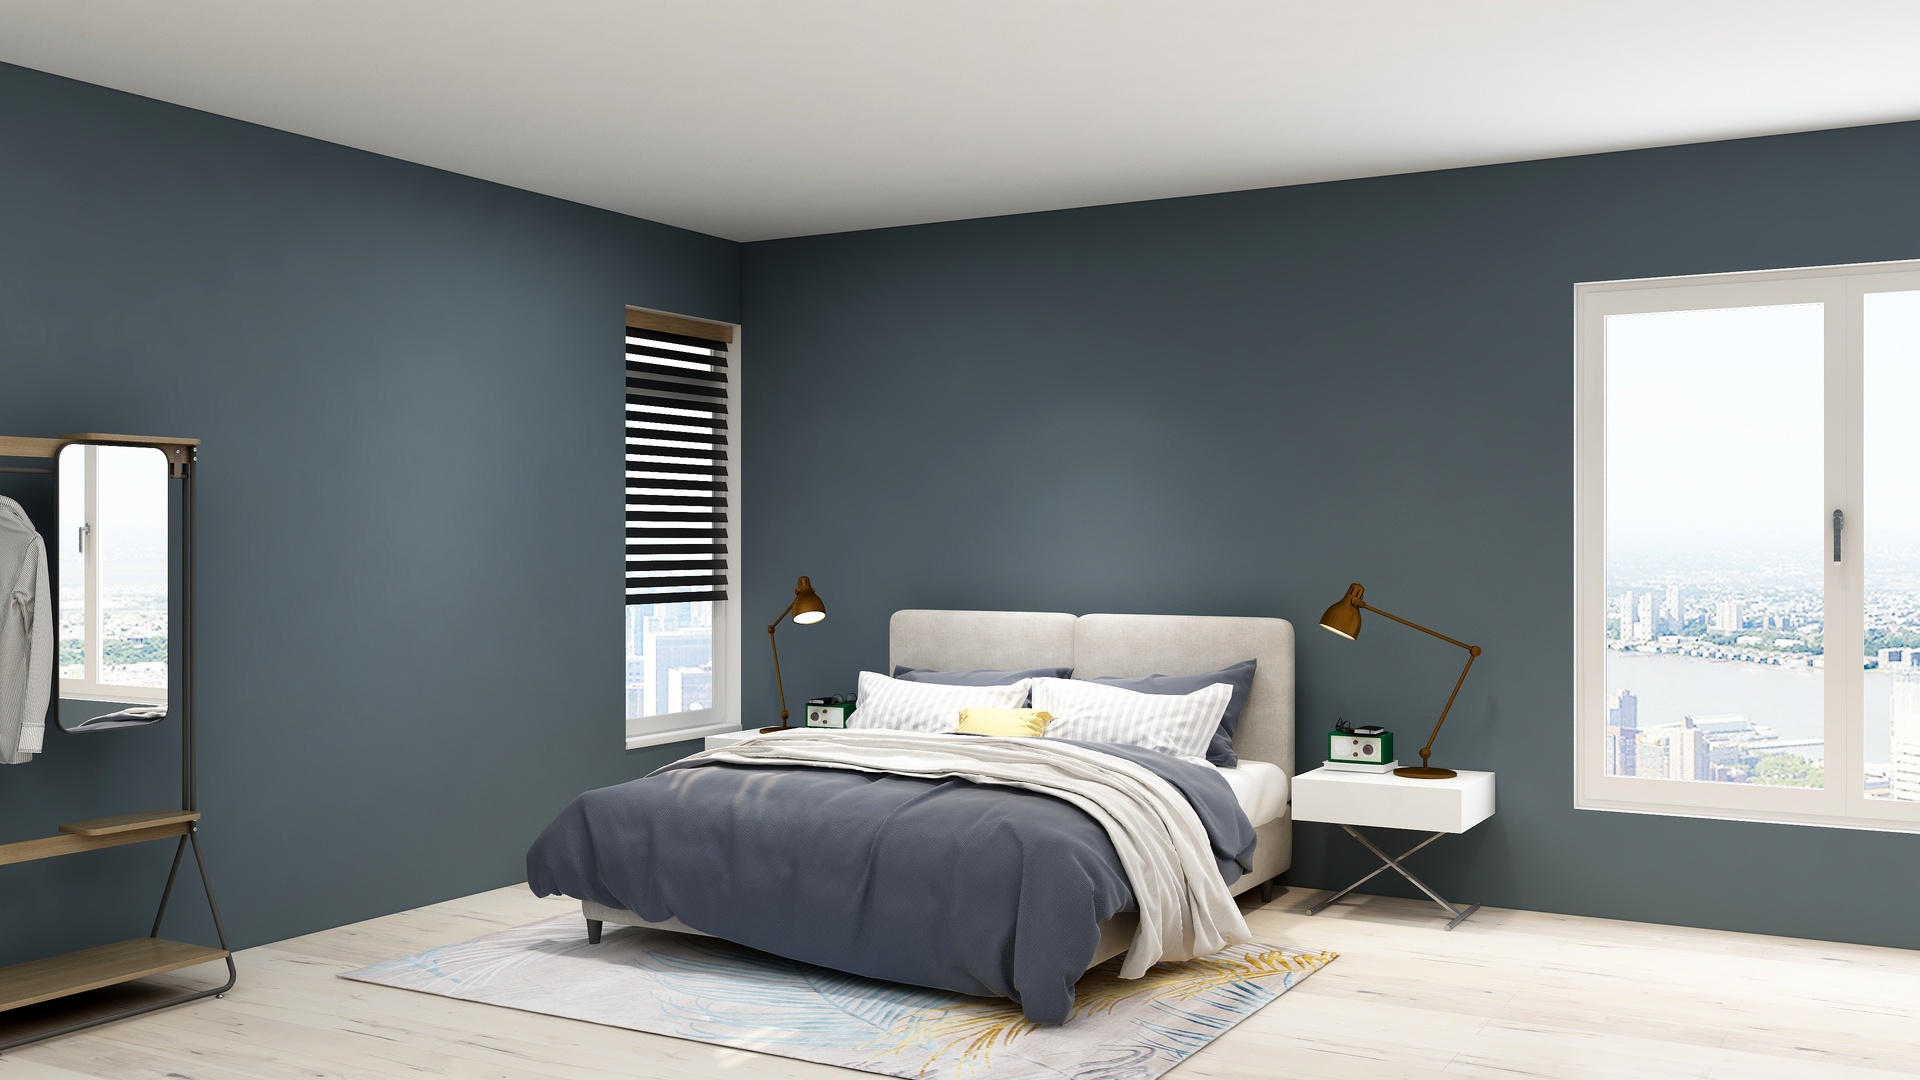 Na obrazku widoczne jest wnętrze minimalistycznej sypialni. Wnętrze urządzone jest w jasnych kolorach, z dominującym białym kolorem, który sprawia, że sypialnia wydaje się przestronna i jasna. Meble są proste, a dodatki i ozdoby zostały zredukowane do minimum, co nadaje wnętrzu eleganckiego i spokojnego charakteru. Wnętrze minimalistycznej sypialni to doskonałe rozwiązanie dla osób, które cenią sobie prostotę i minimalizm oraz chcą stworzyć sobie wypoczynek w spokojnej i harmonijnej przestrzeni. Obrazek może stanowić inspirację dla osób szukających pomysłu na aranżację swojej sypialni w stylu minimalistycznym.